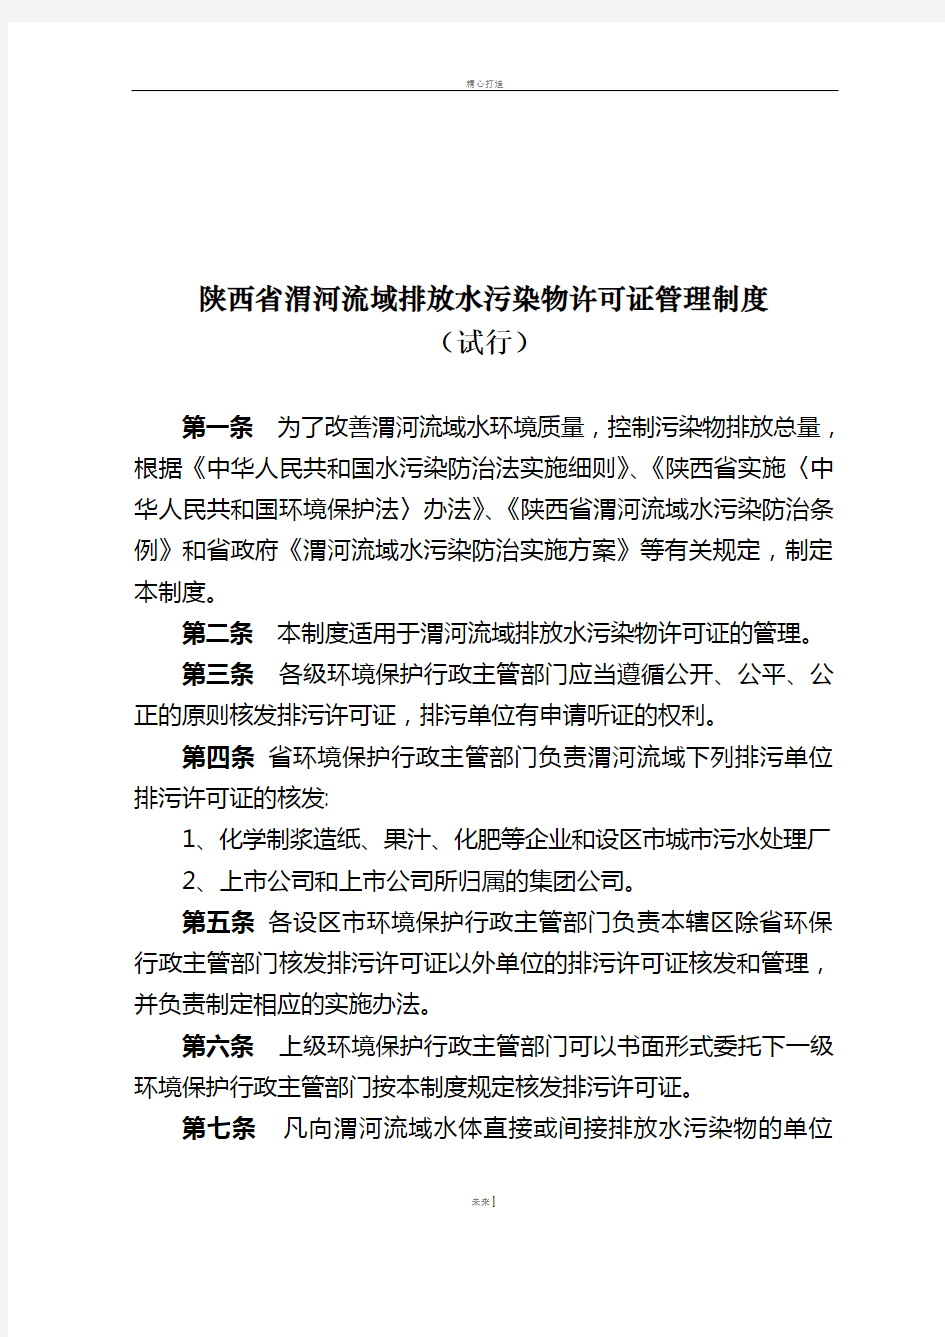 陕西渭河流域排放水污染物许可证管理制度-陕西环保厅